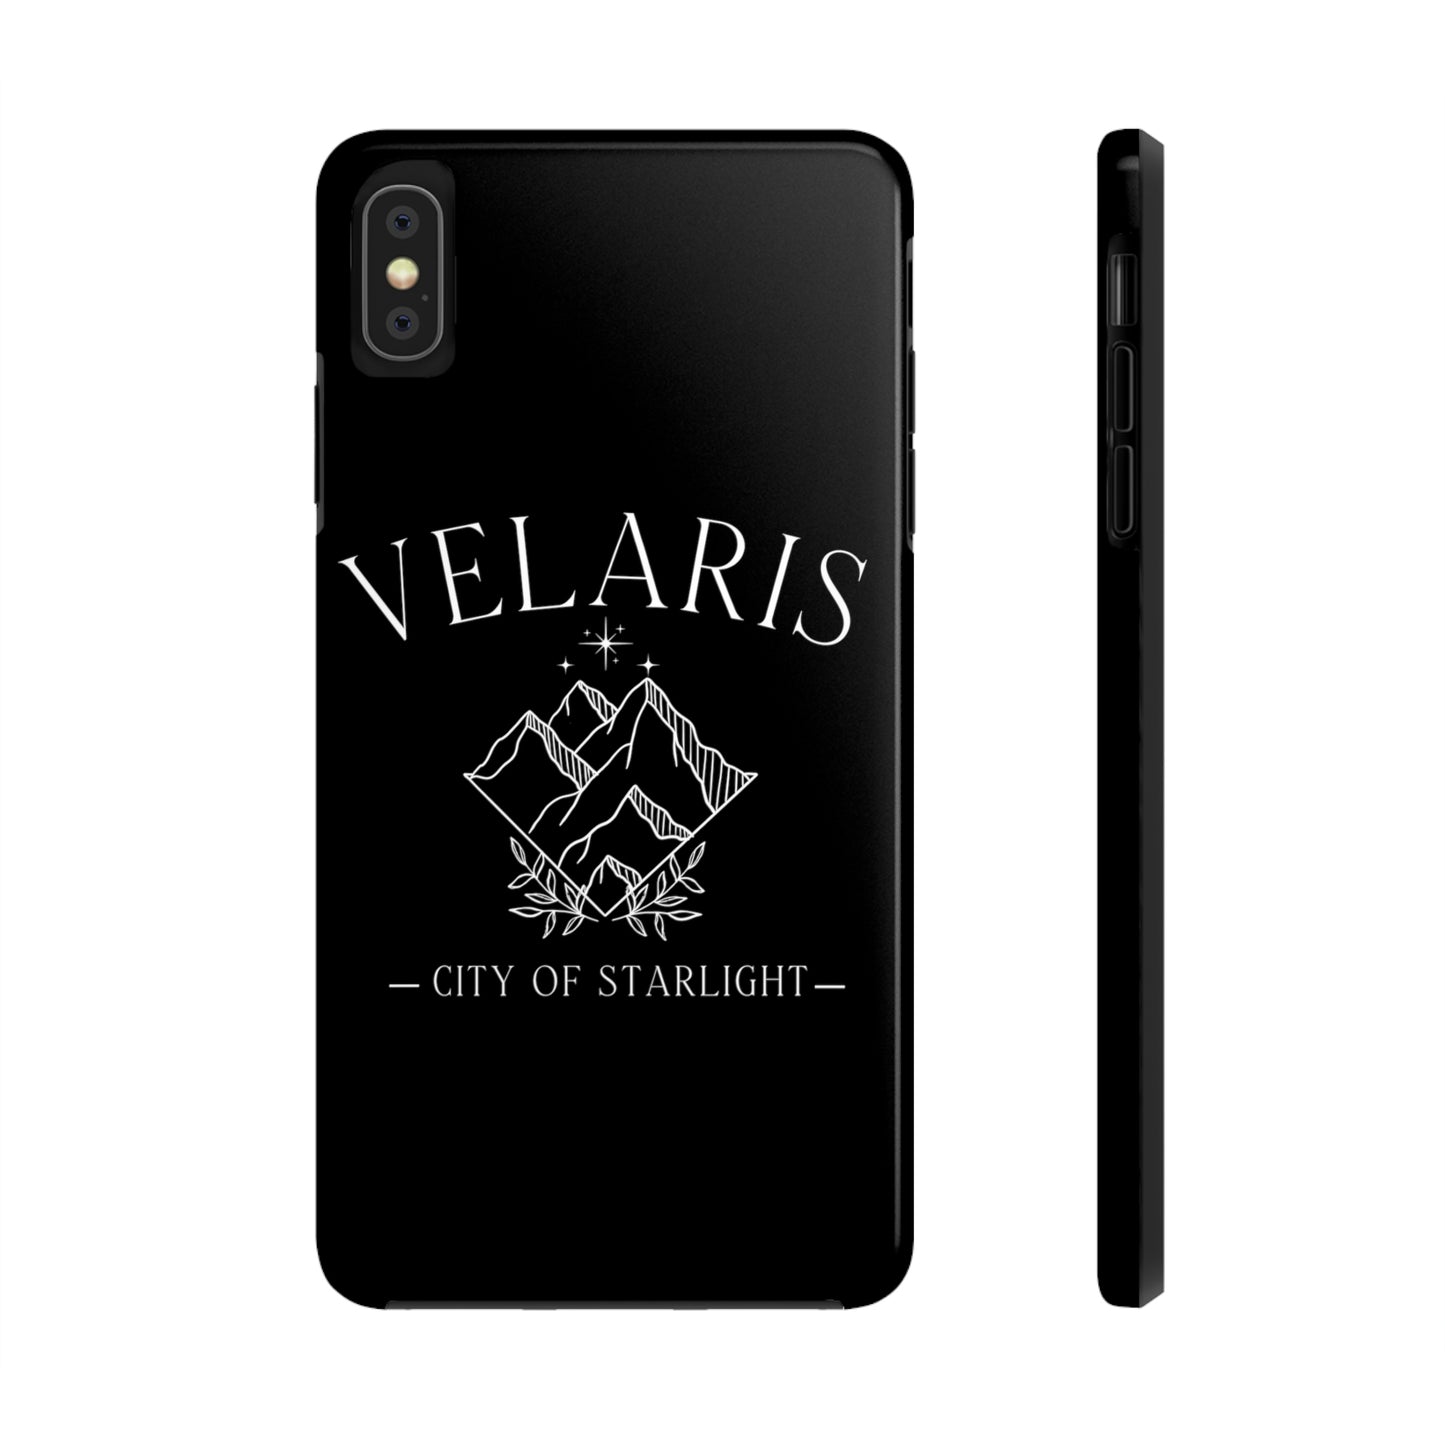 Velaris Phone Cases